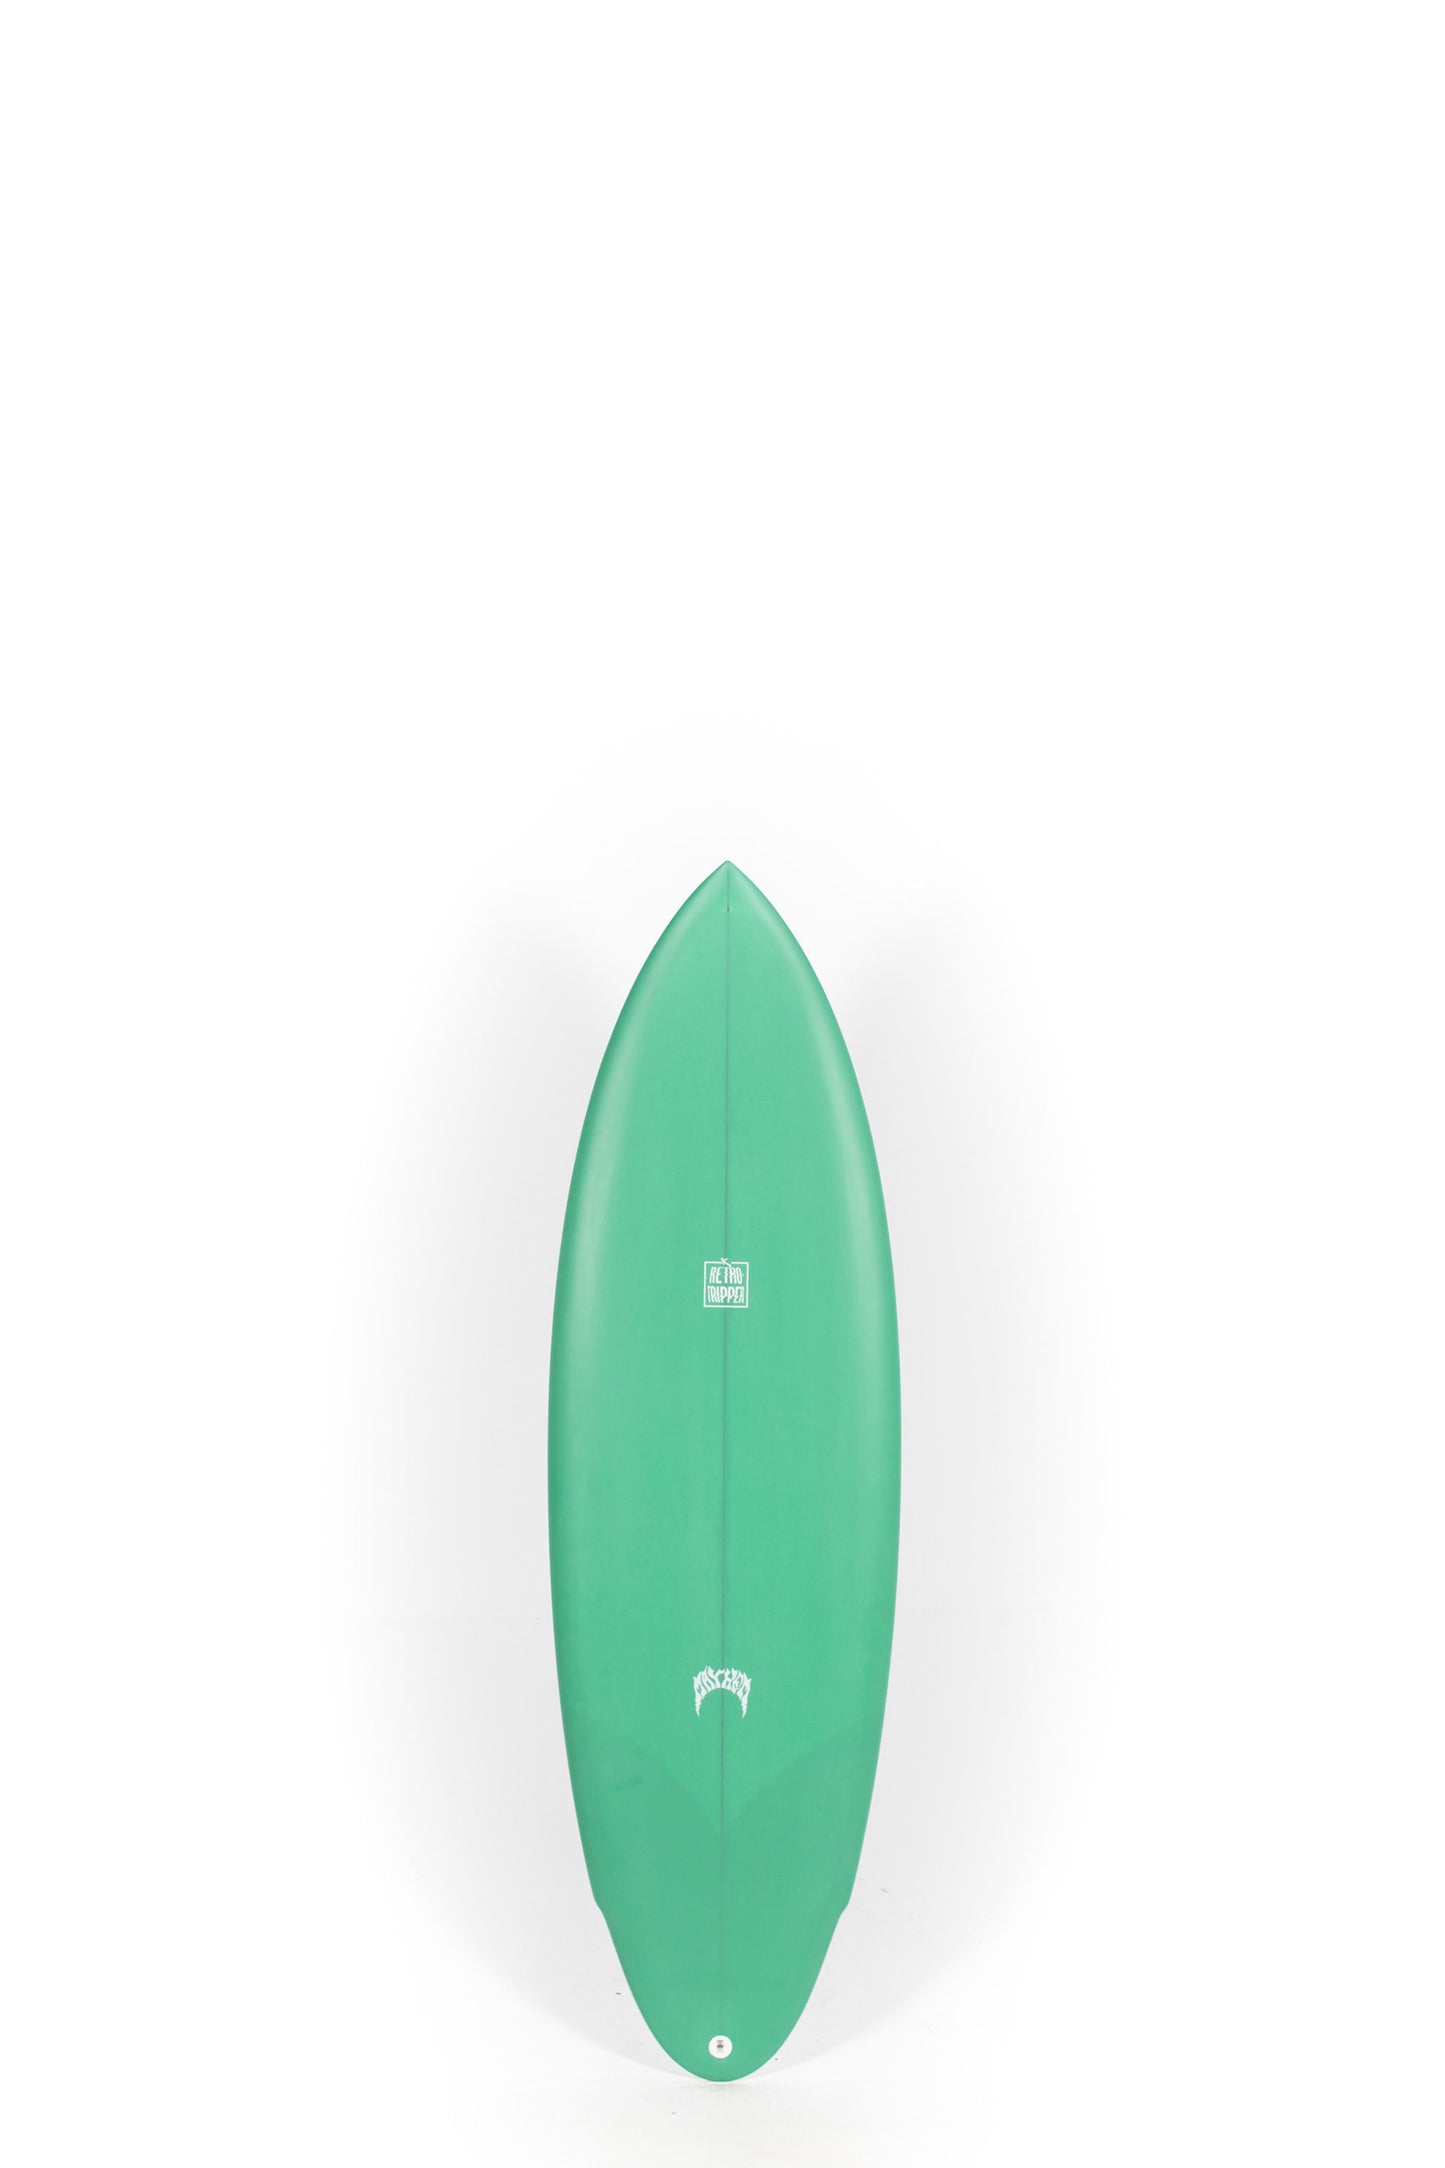 Pukas Surf Shop - Lost Surfboard - RETRO TRIPPER by Matt Biolos - 5'7" x 19.75 x 2.40 x 30L - MH14302